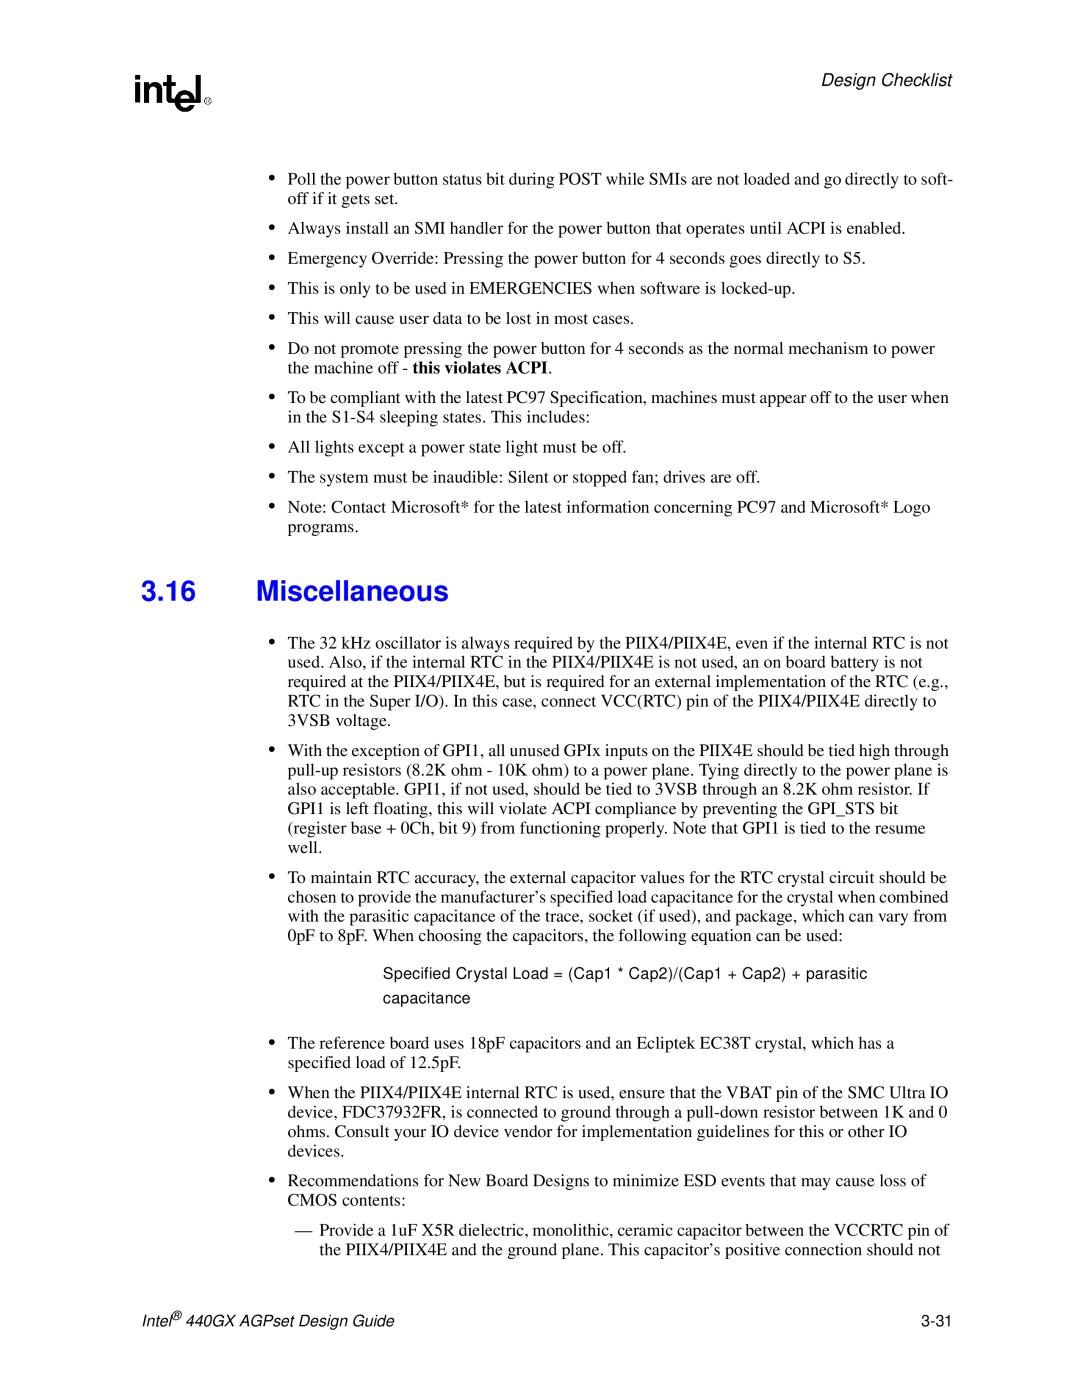 Intel 440GX manual Miscellaneous, Design Checklist 